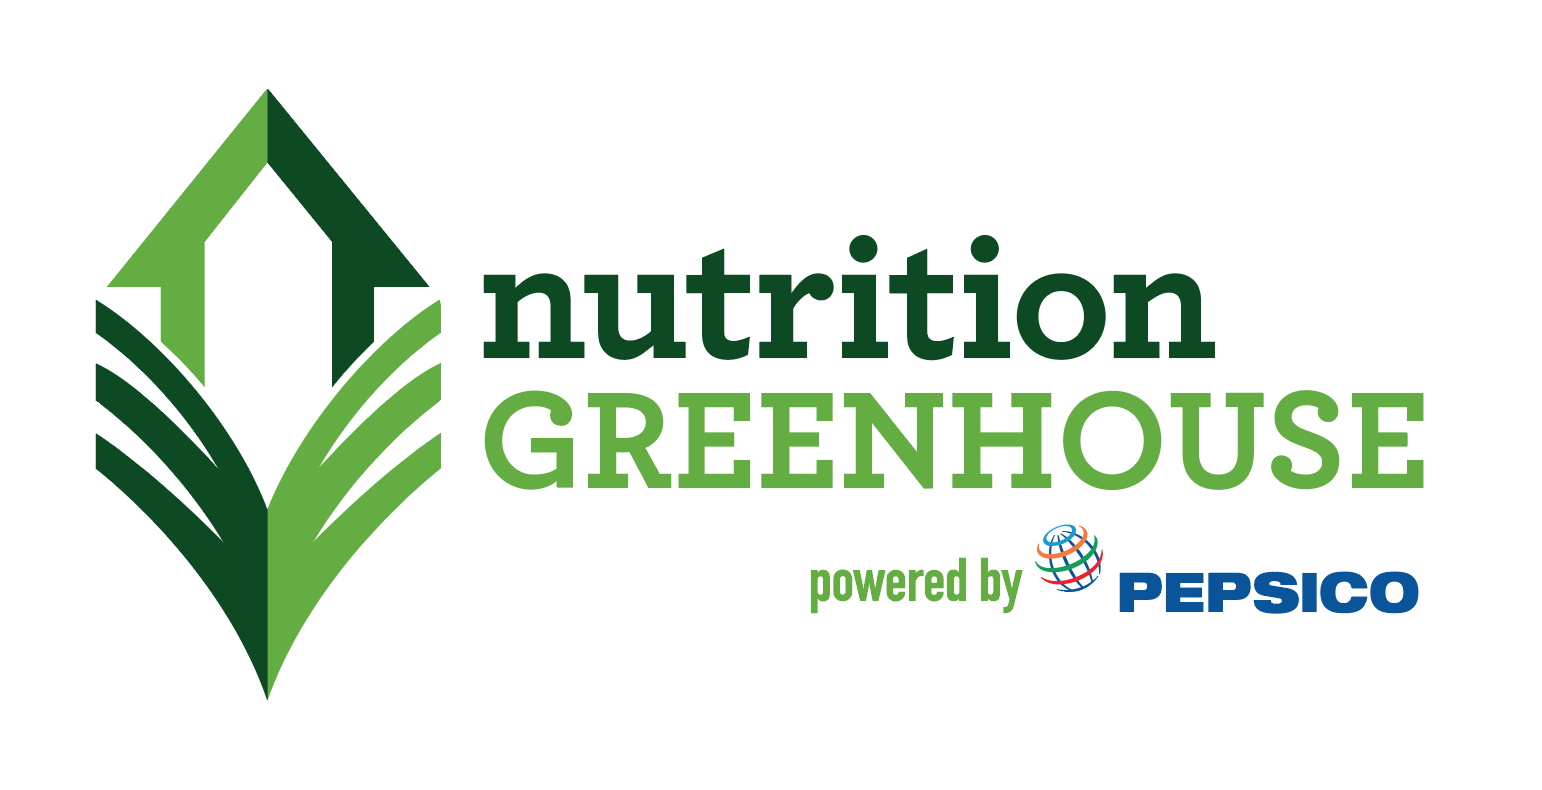 Pepsico ogłasza drugą edycję programu Nutrition Greenhouse